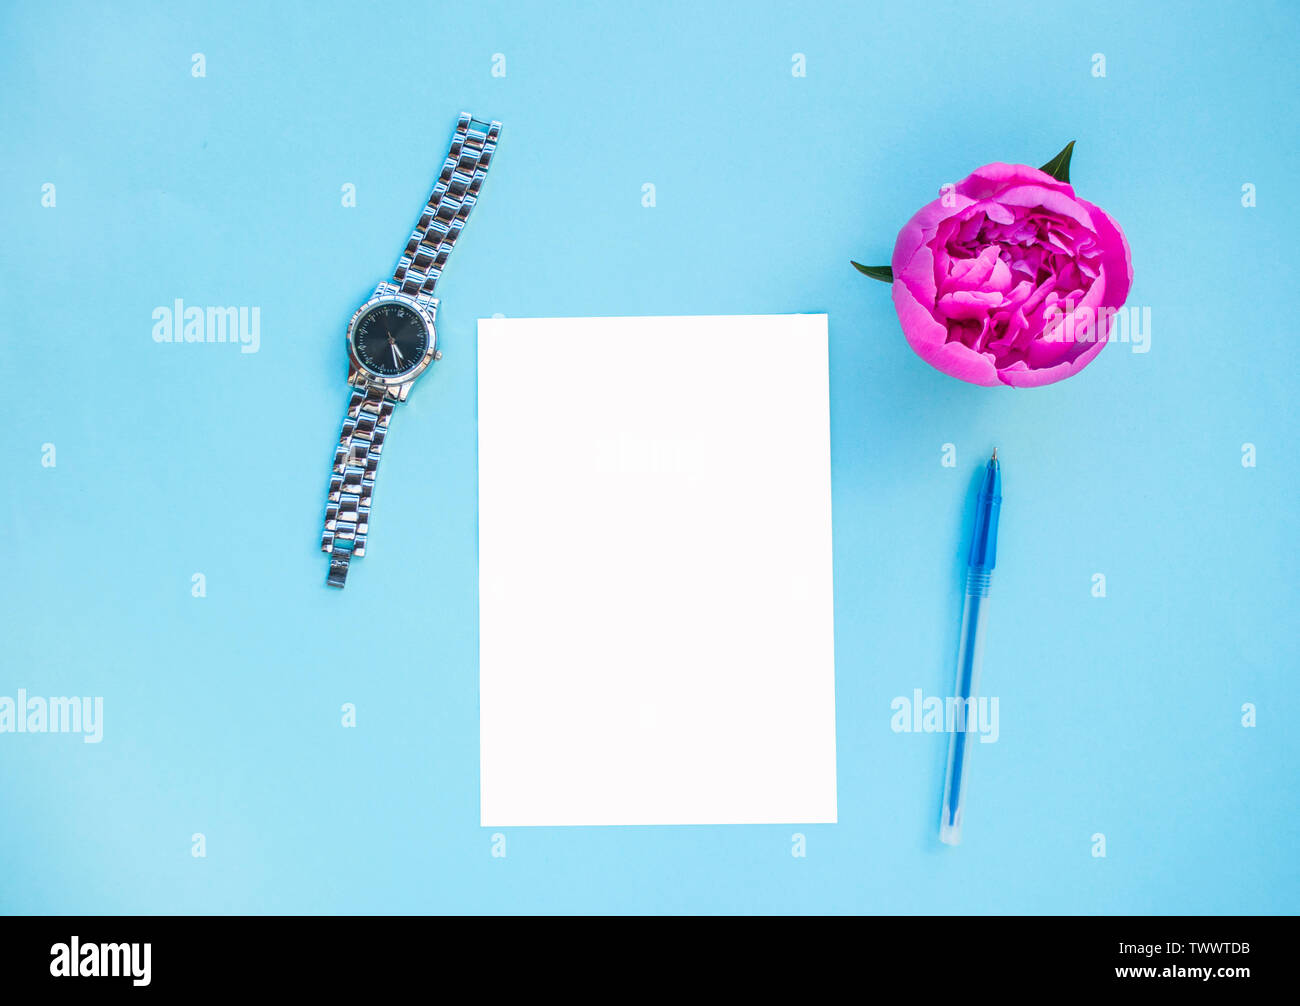 Flach der schönen rosa Pfingstrose auf blauem Hintergrund mit Kugelschreiber, Uhren und weiß isoliert Papier. Stockfoto